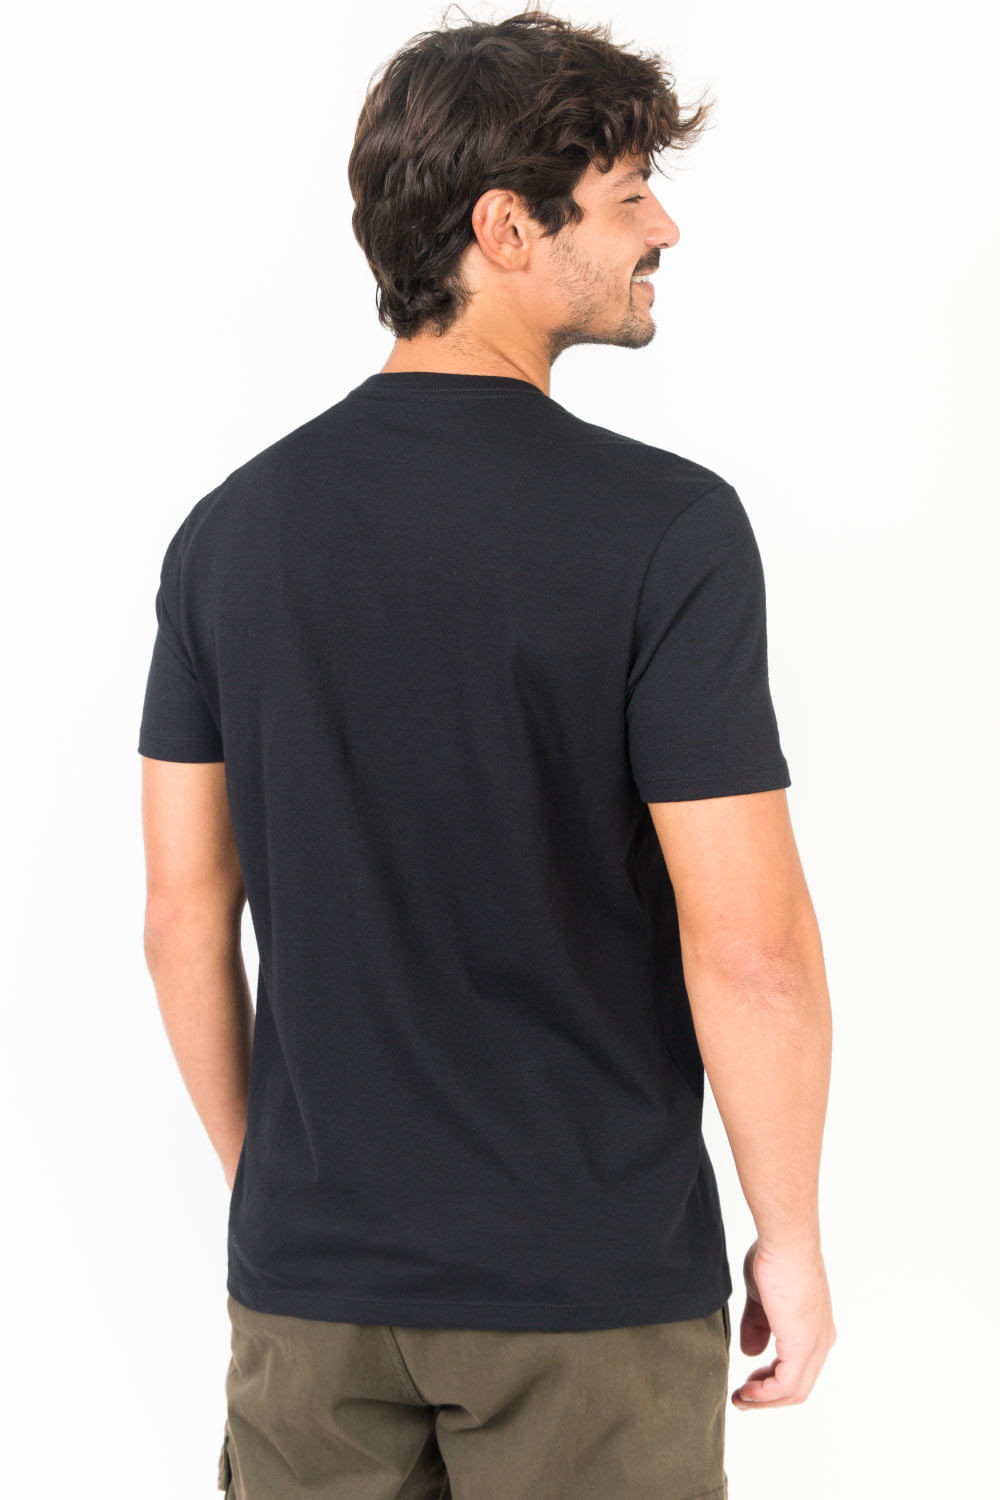 T-shirt preta c/ três botões - Tiffosi, Jutina